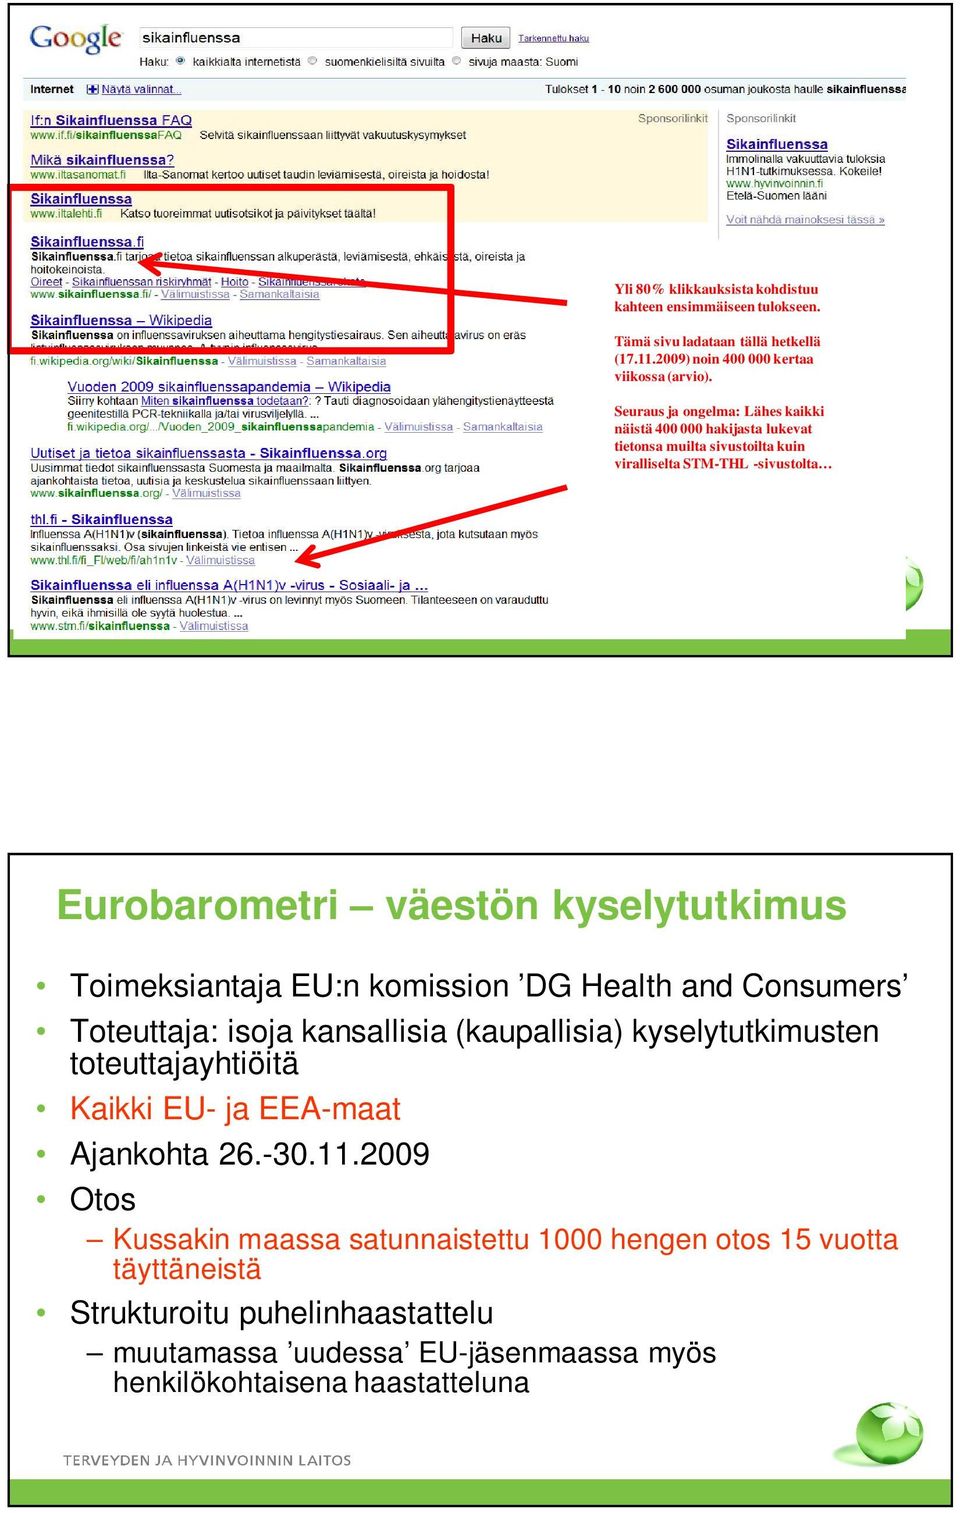 Toimeksiantaja EU:n komission DG Health and Consumers Toteuttaja: isoja kansallisia (kaupallisia) kyselytutkimusten toteuttajayhtiöitä Kaikki EU- ja EEA-maat Ajankohta 26.-30.